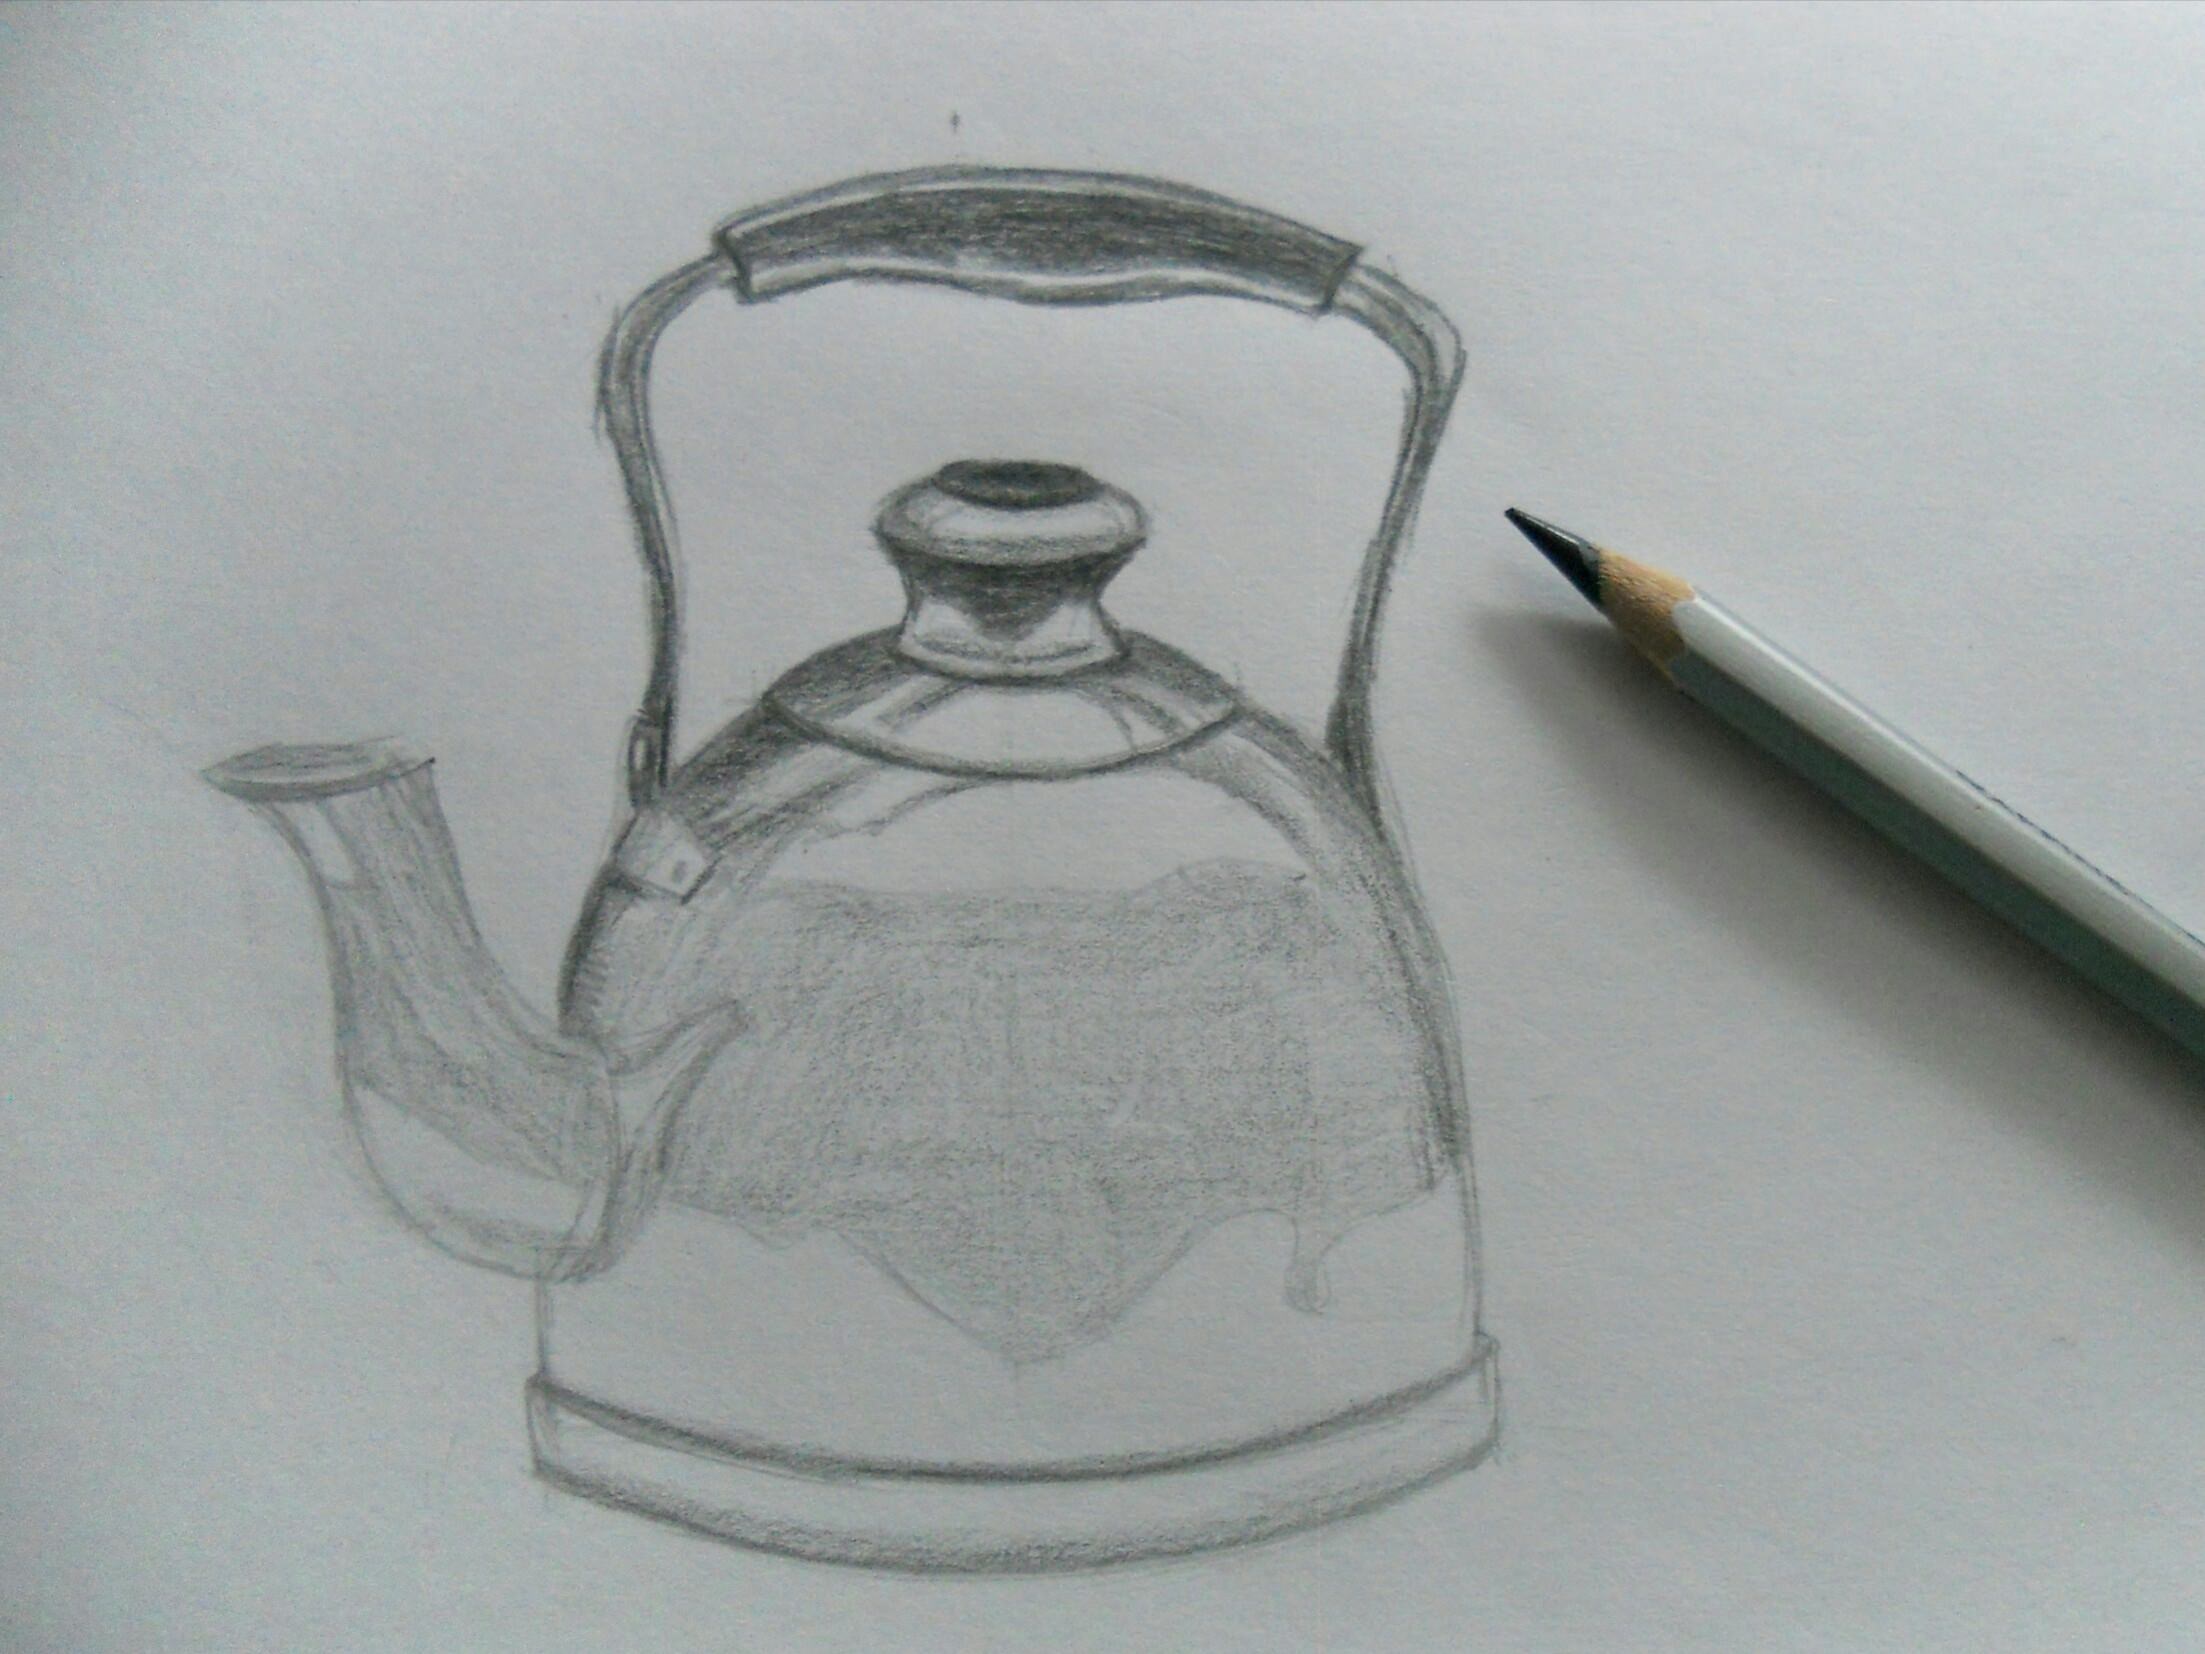 Изобразить предмет быта. Чайник карандашом. Чайник рисунок карандашом. Наброски карандашом предметы. Поэтапное рисование чайника.